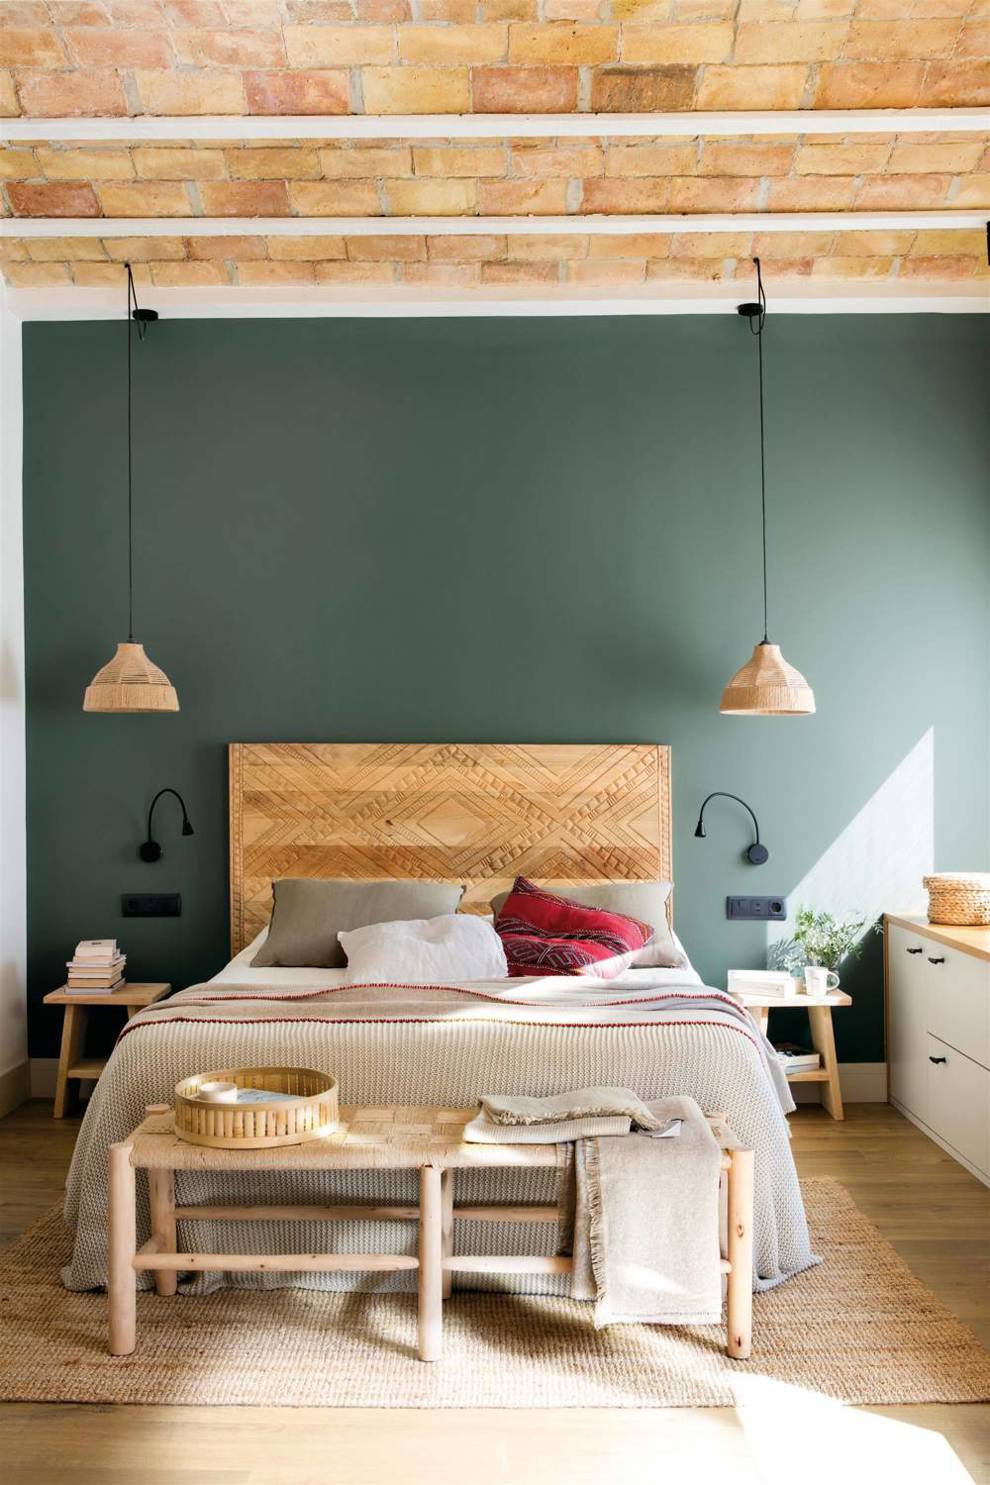 00549178 dormitorio con cabecero de madera y pared pintada en verde 00000000 aad7ebd0 240405151531